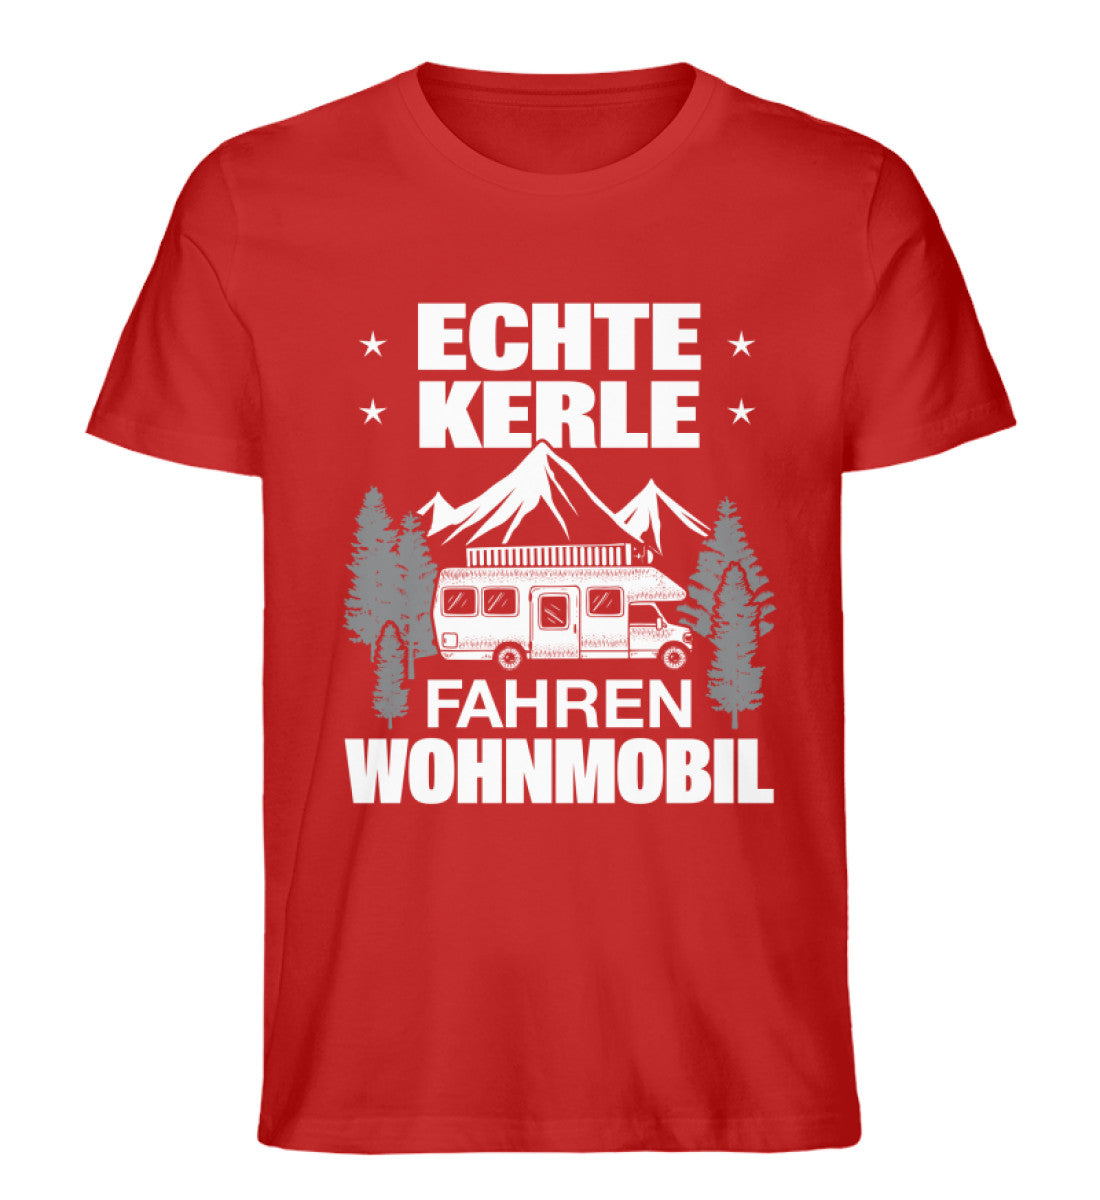 Echte Kerle fahren Wohnmobil - Herren Organic T-Shirt camping Rot